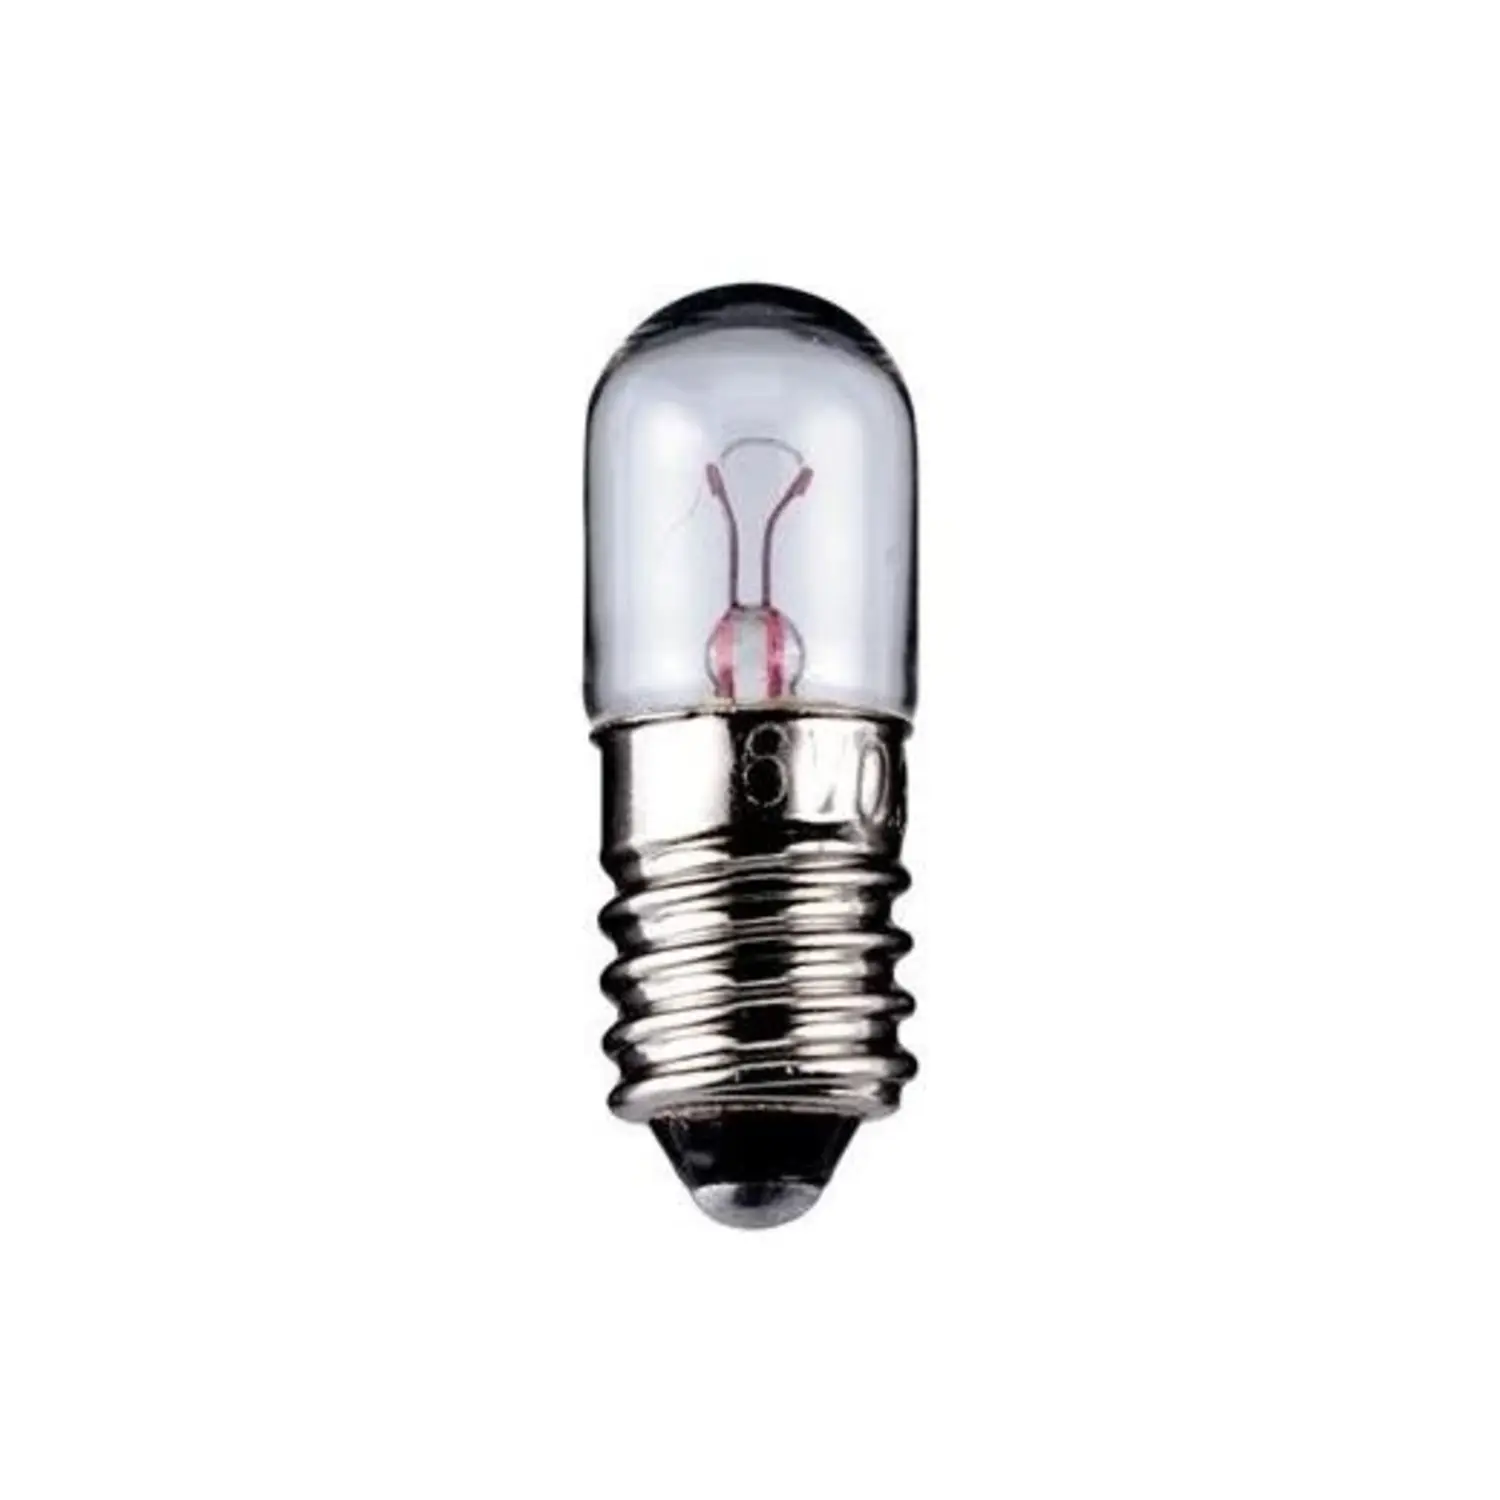 immagine del prodotto lampadina tubolare     CE bianco caldo 7 volt 2 watt wnt 9531